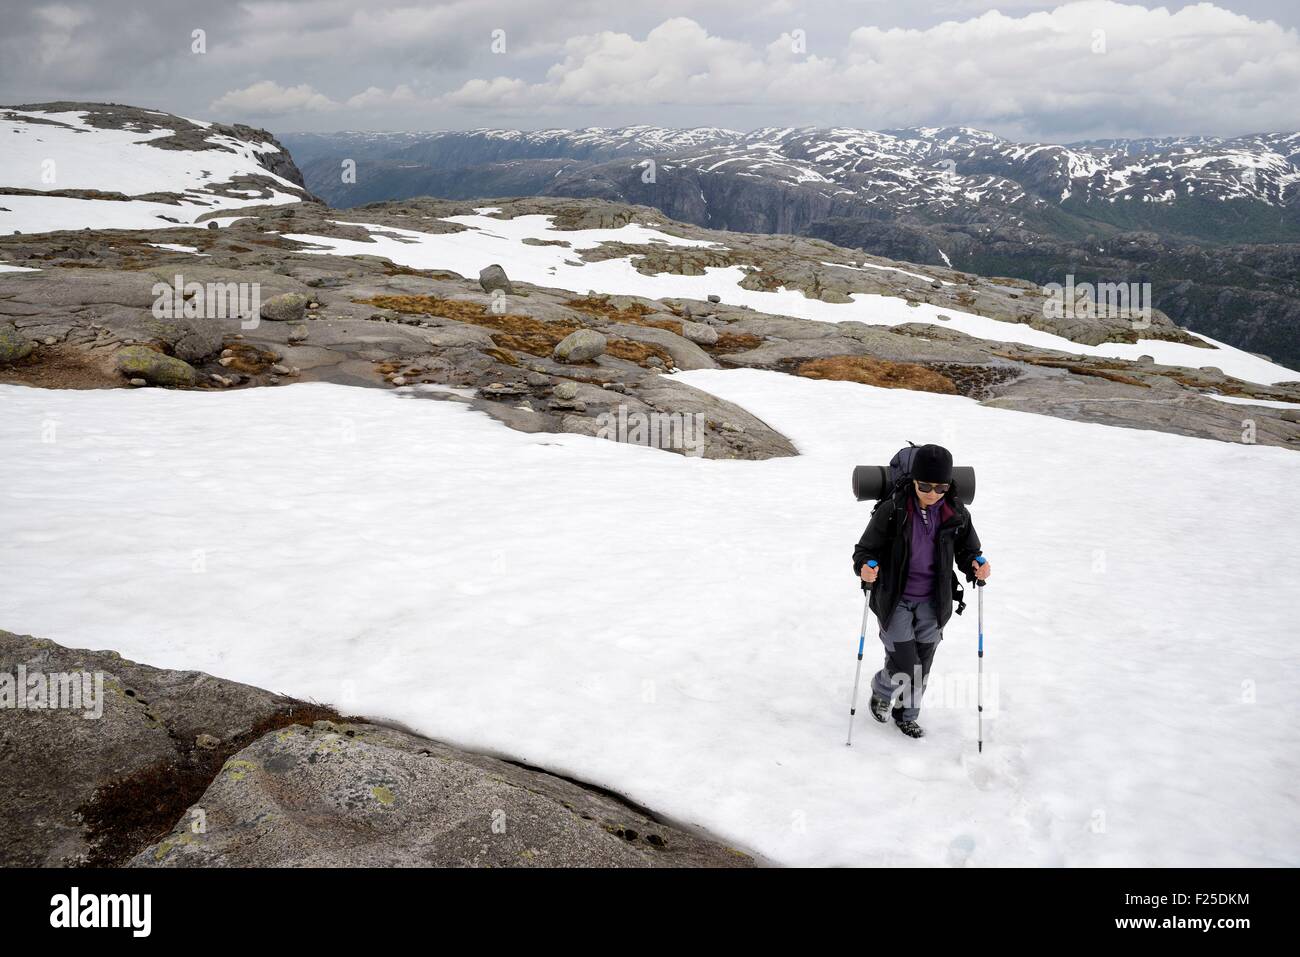 Norvegia, Rogaland, Lysefjord, Kjerag (Kiragg), escursionista sul sentiero andando a Kjeragbolten, ancora un po' di neve alla fine di giugno (sig. Dawa OK) Foto Stock